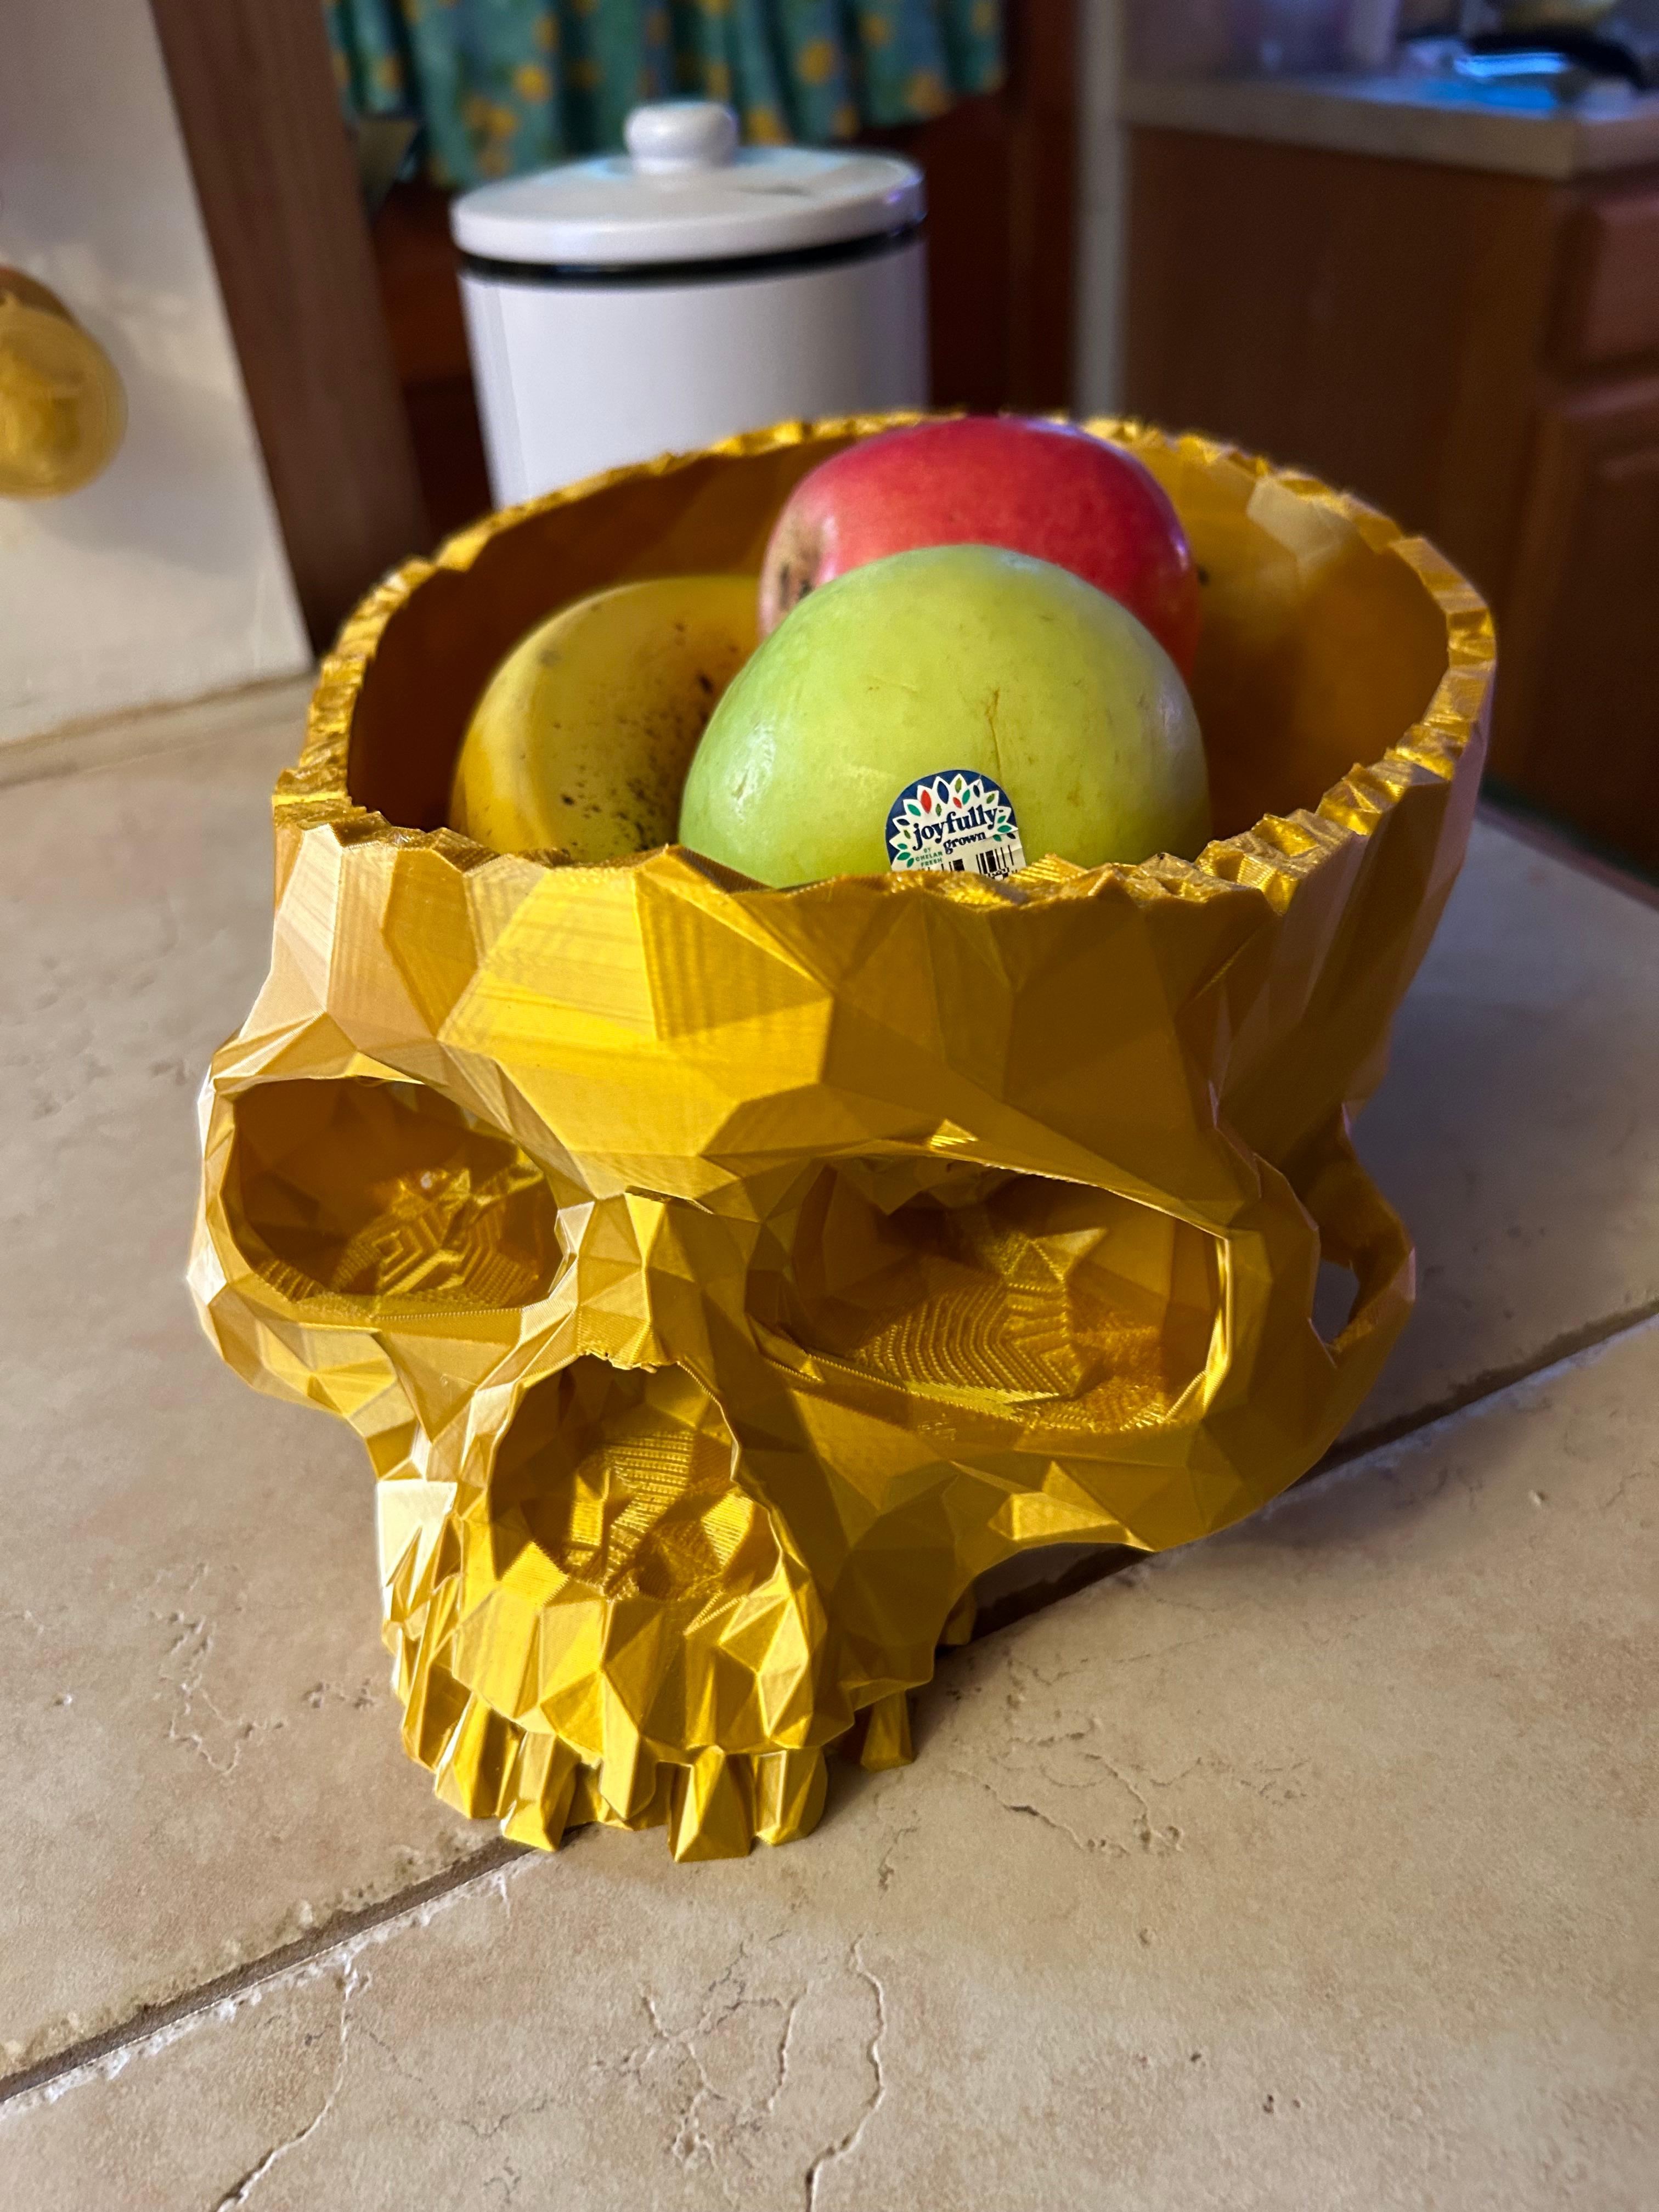 Semi-LowPoly Skull Bowl 3d model